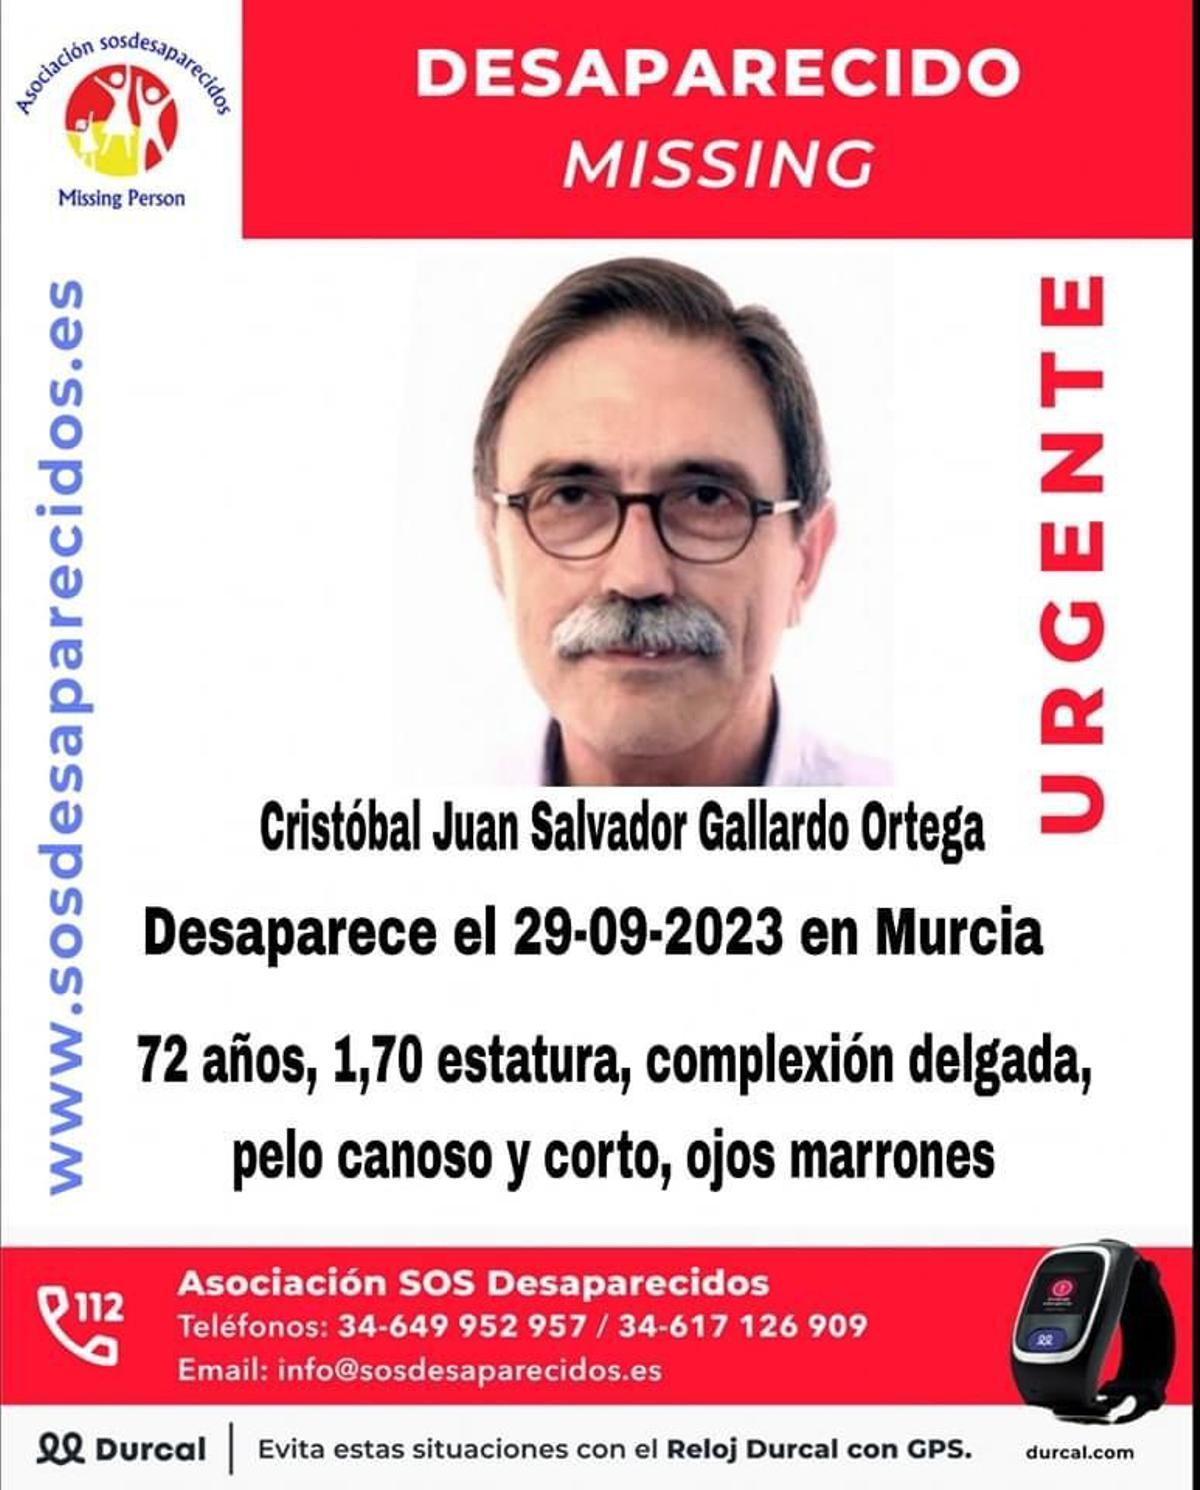 Desaparecido en Murcia este viernes.